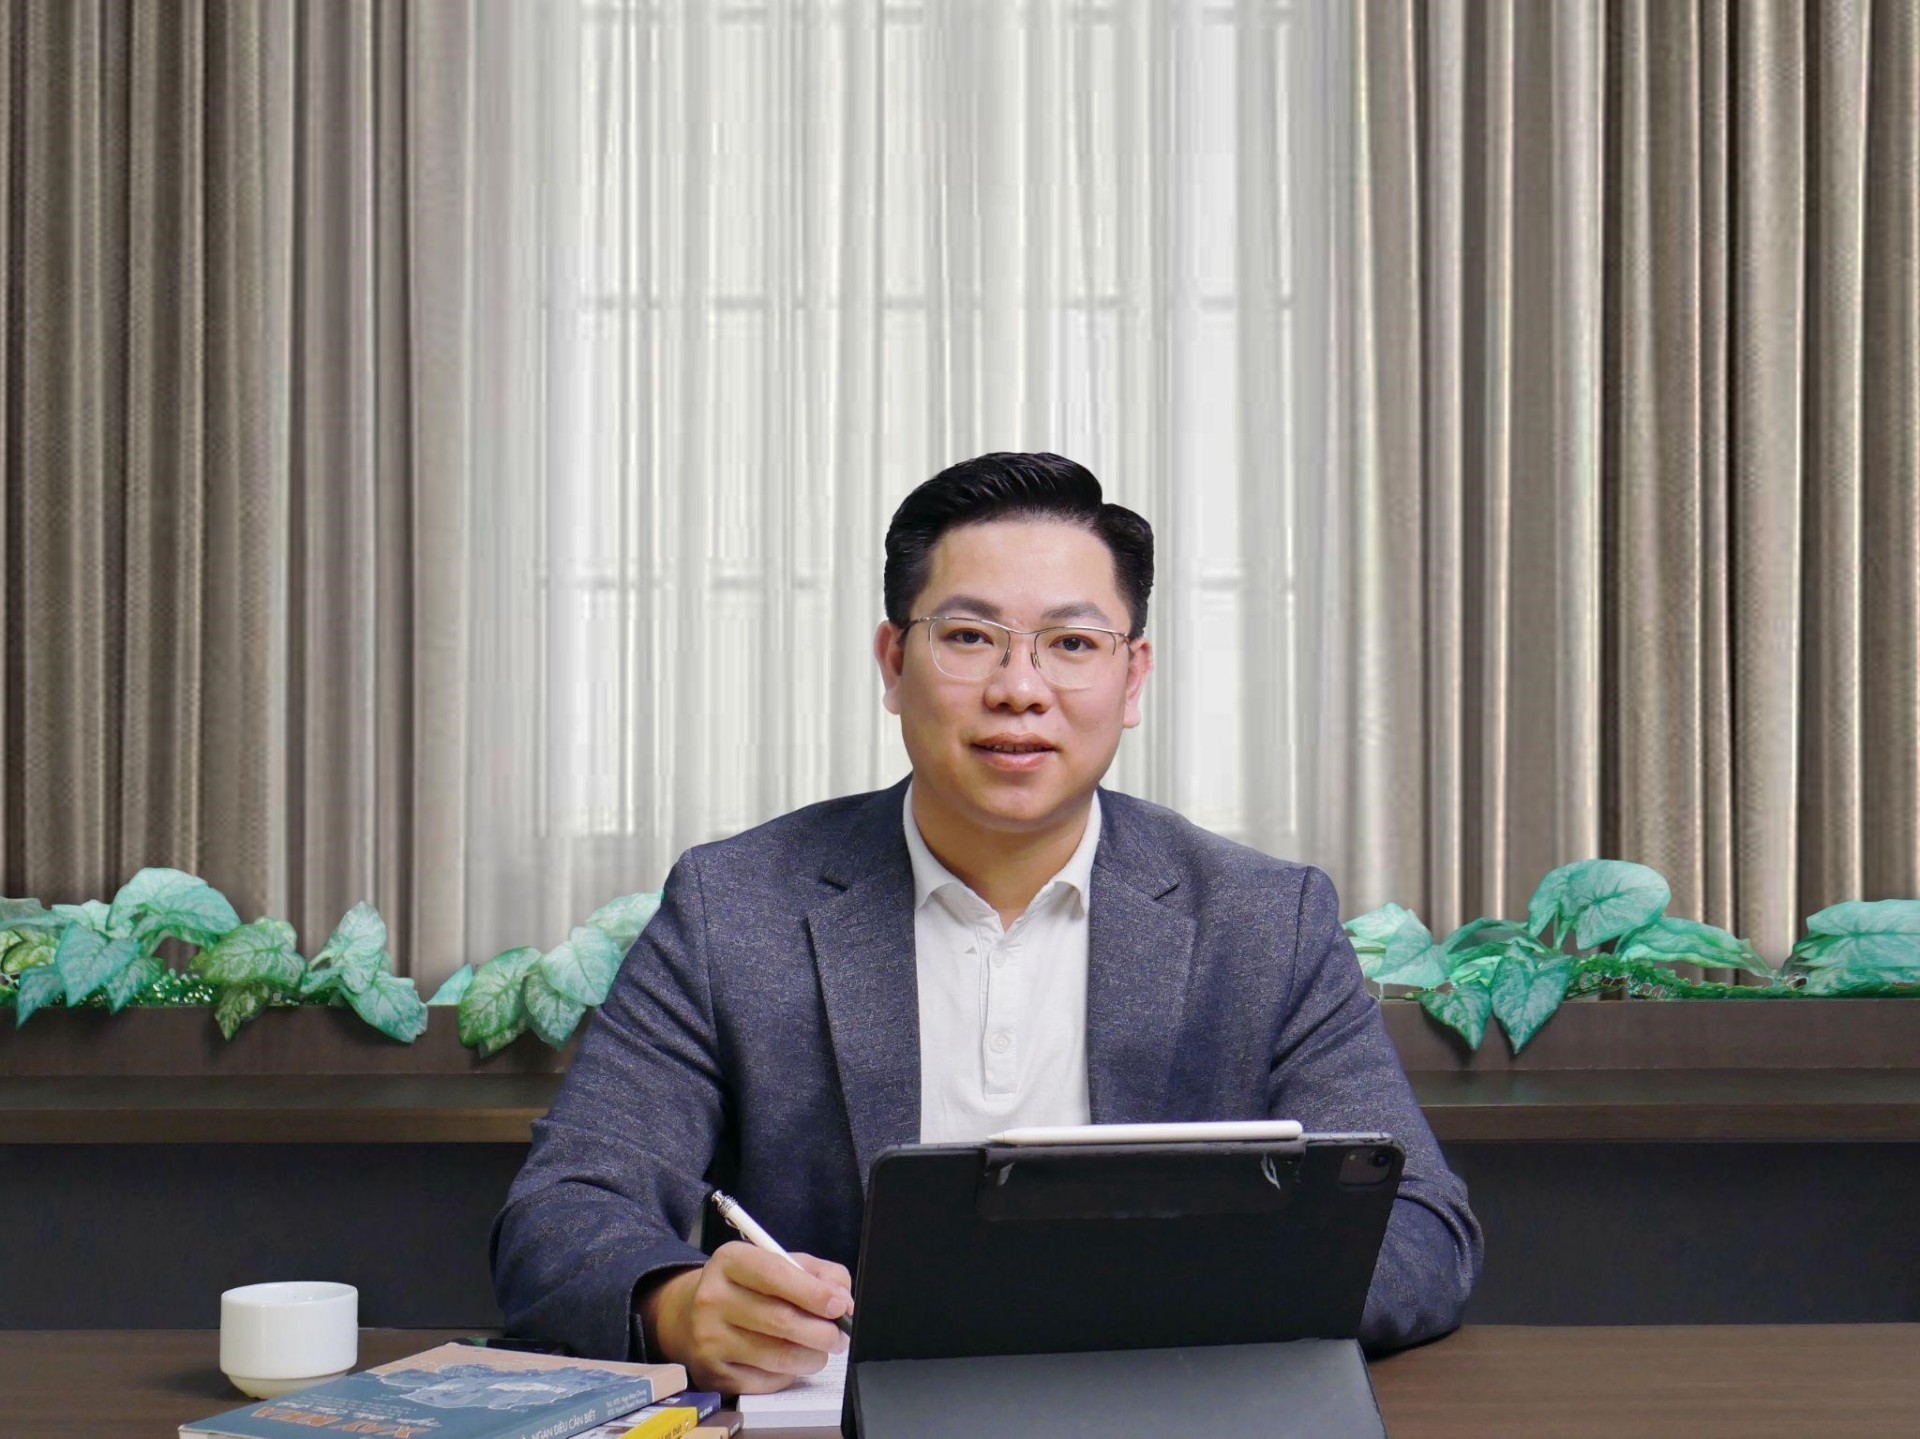 CEO Viettrend Đào Huy Hoàn: Doanh nghiệp chỉ thật sự thành công khi khách hàng cũ giới thiệu khách hàng mới | Sức khỏe Việt